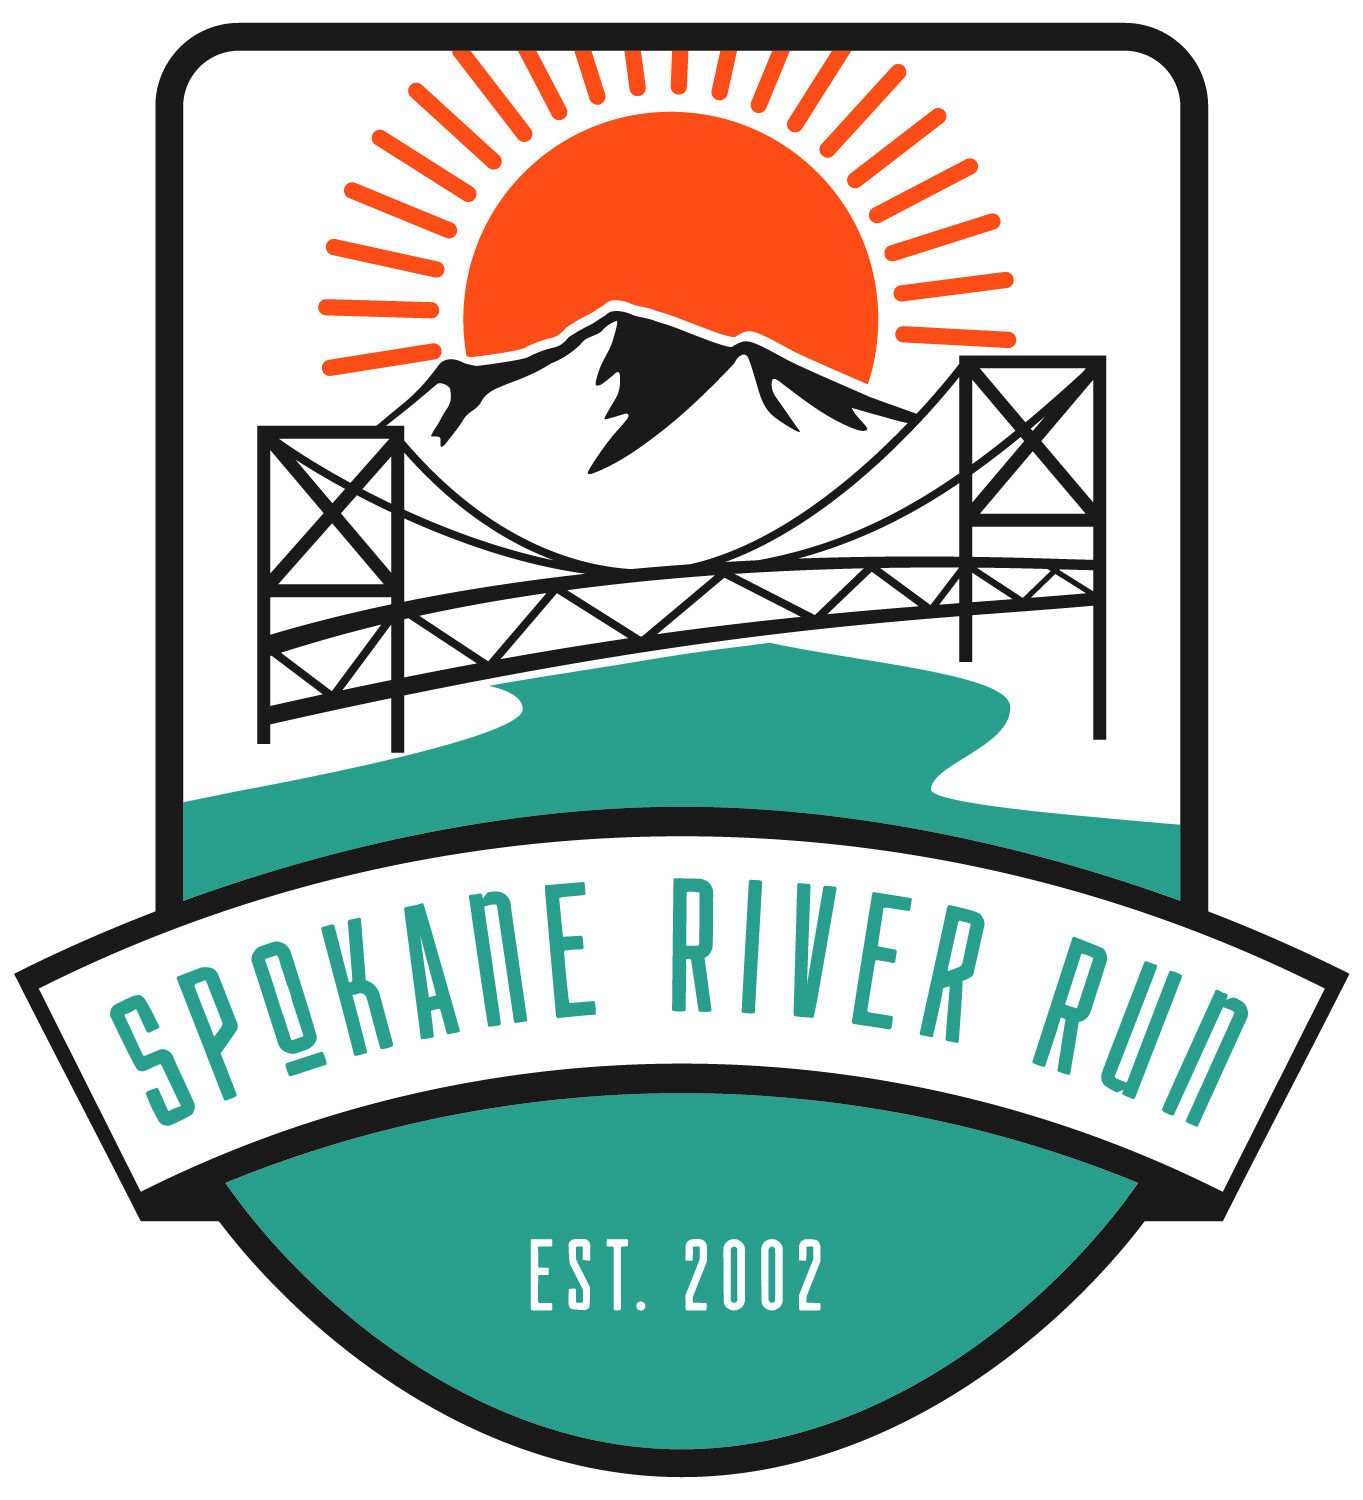 Spokane River Run